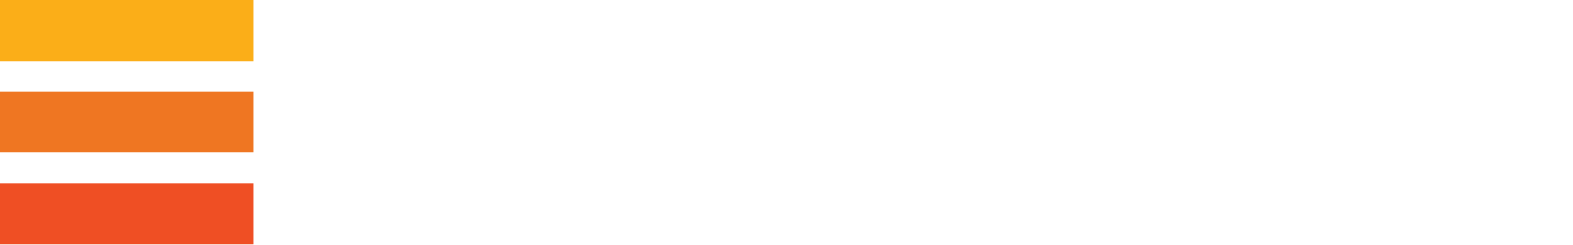 Evraz Logo groß für dunkle Hintergründe (transparentes PNG)